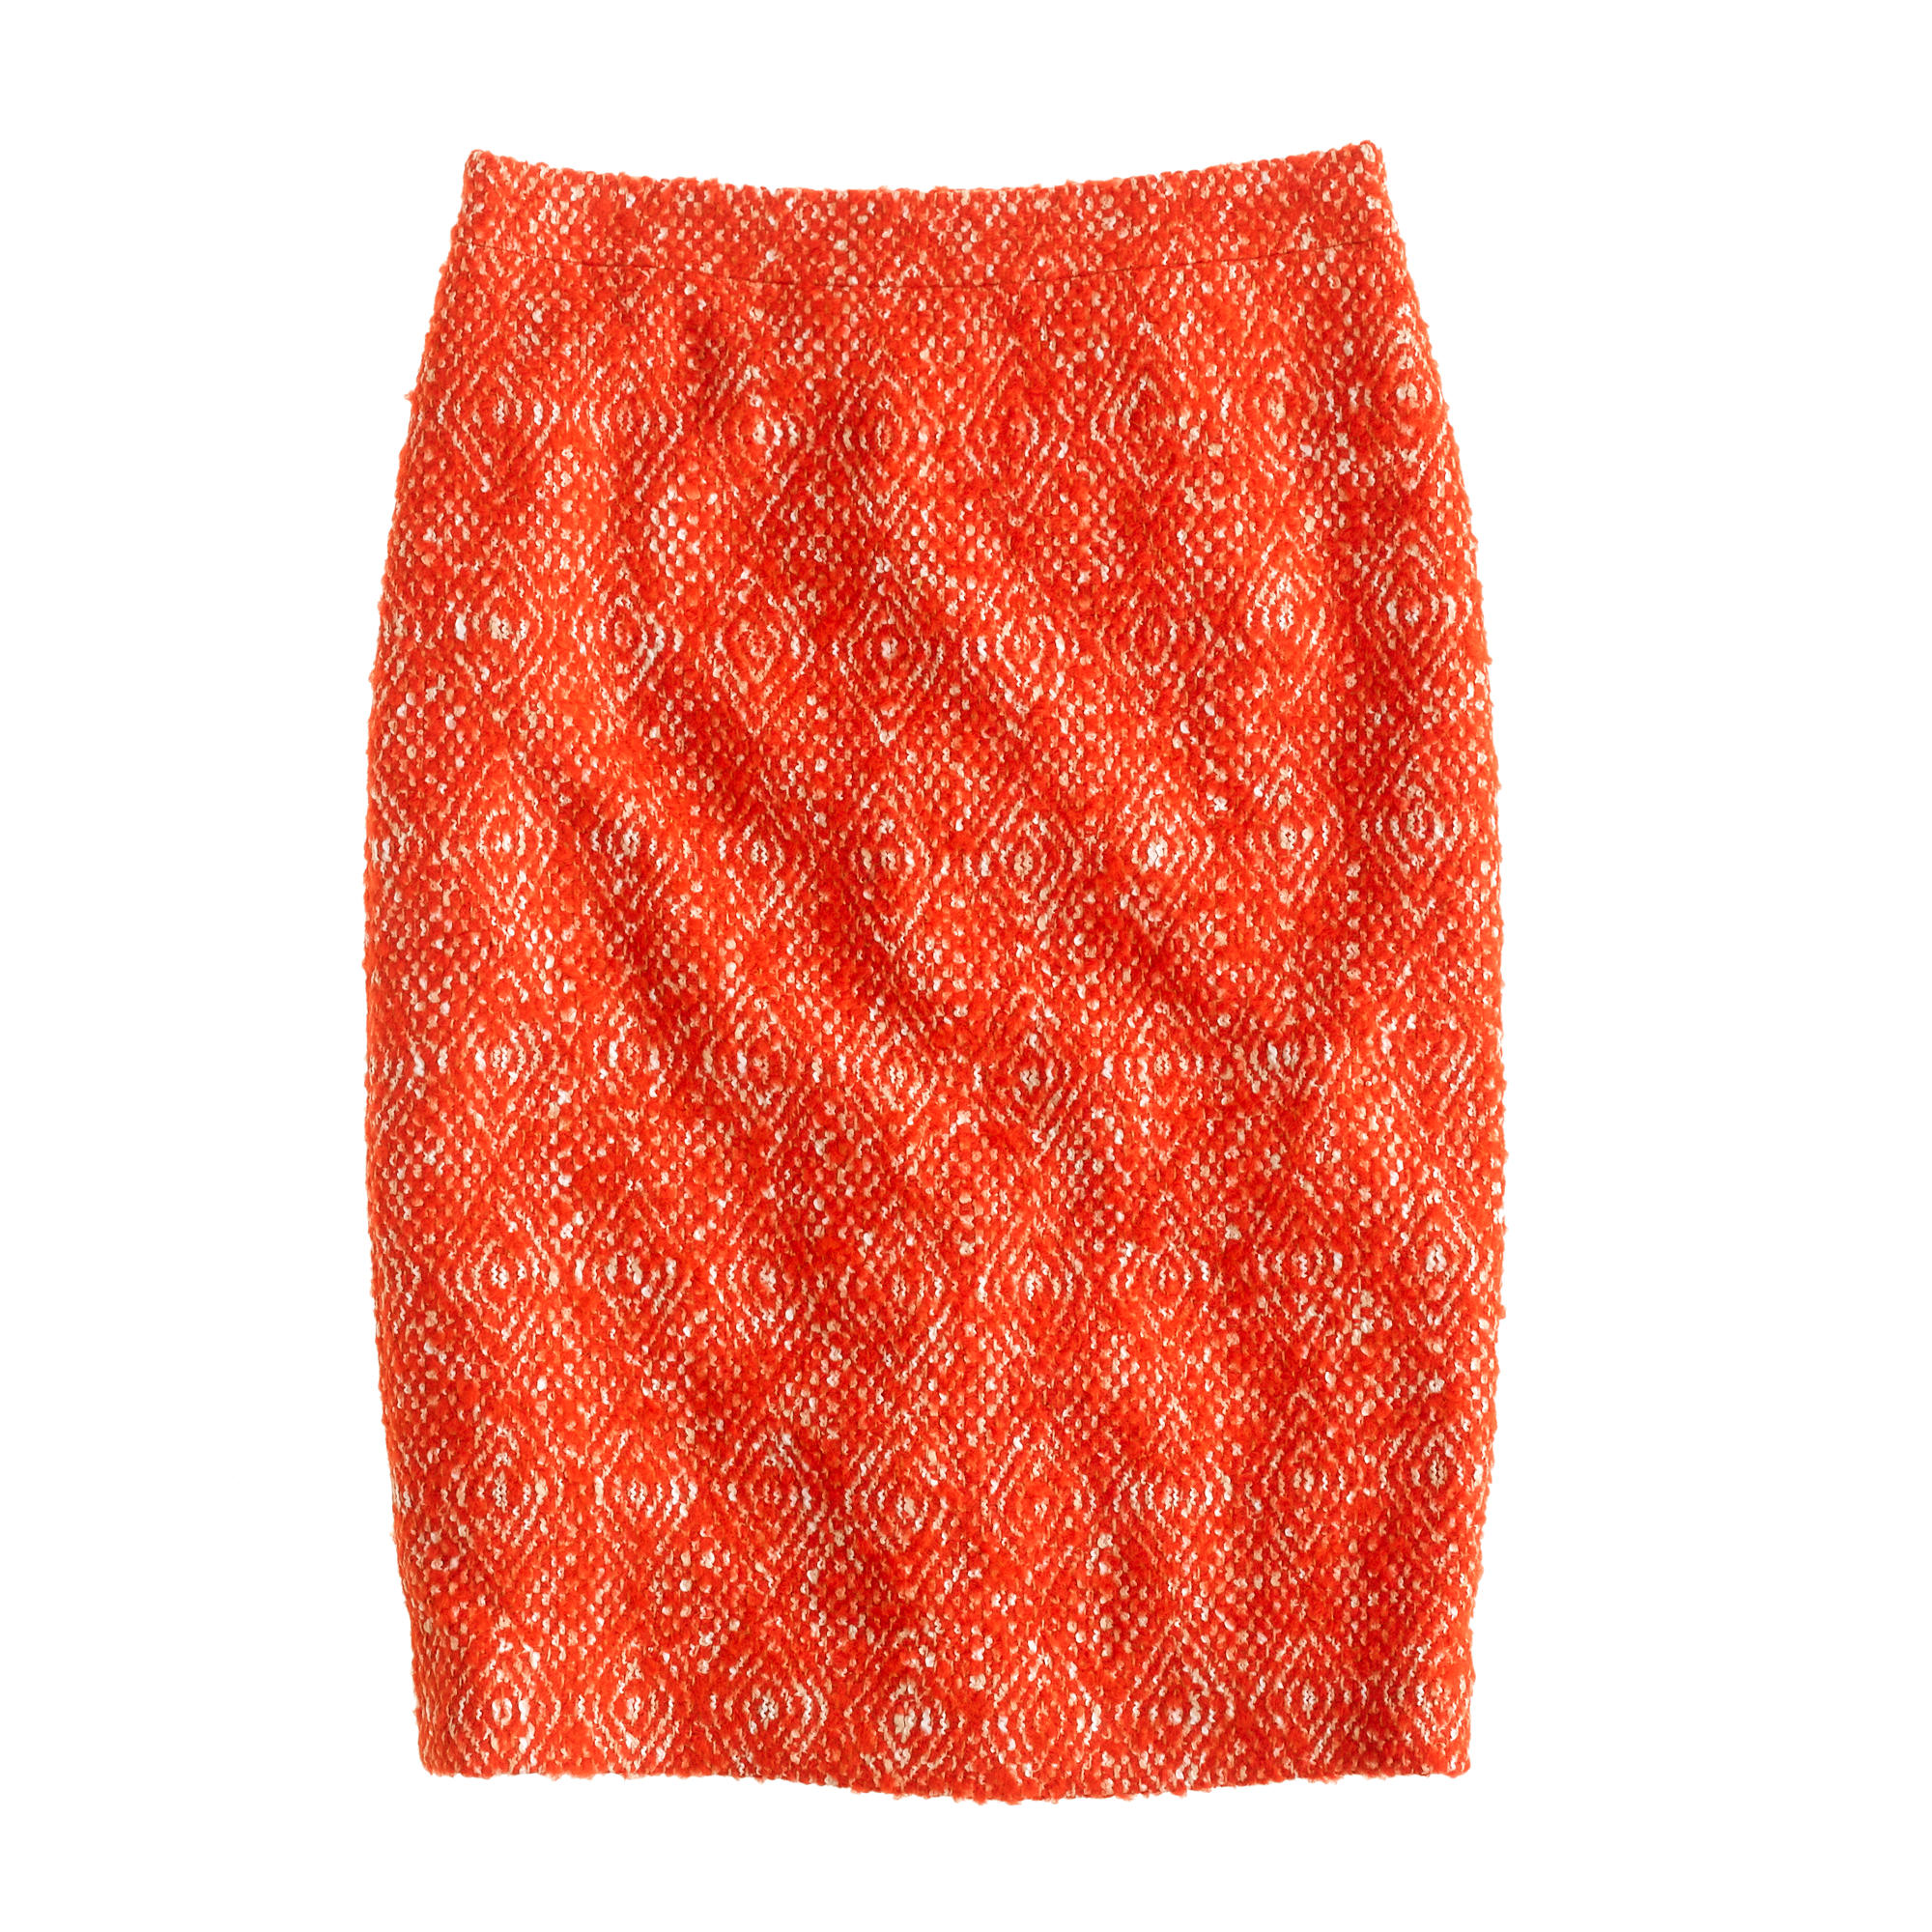 No. 2 pencil skirt in corkscrew tweed : | J.Crew